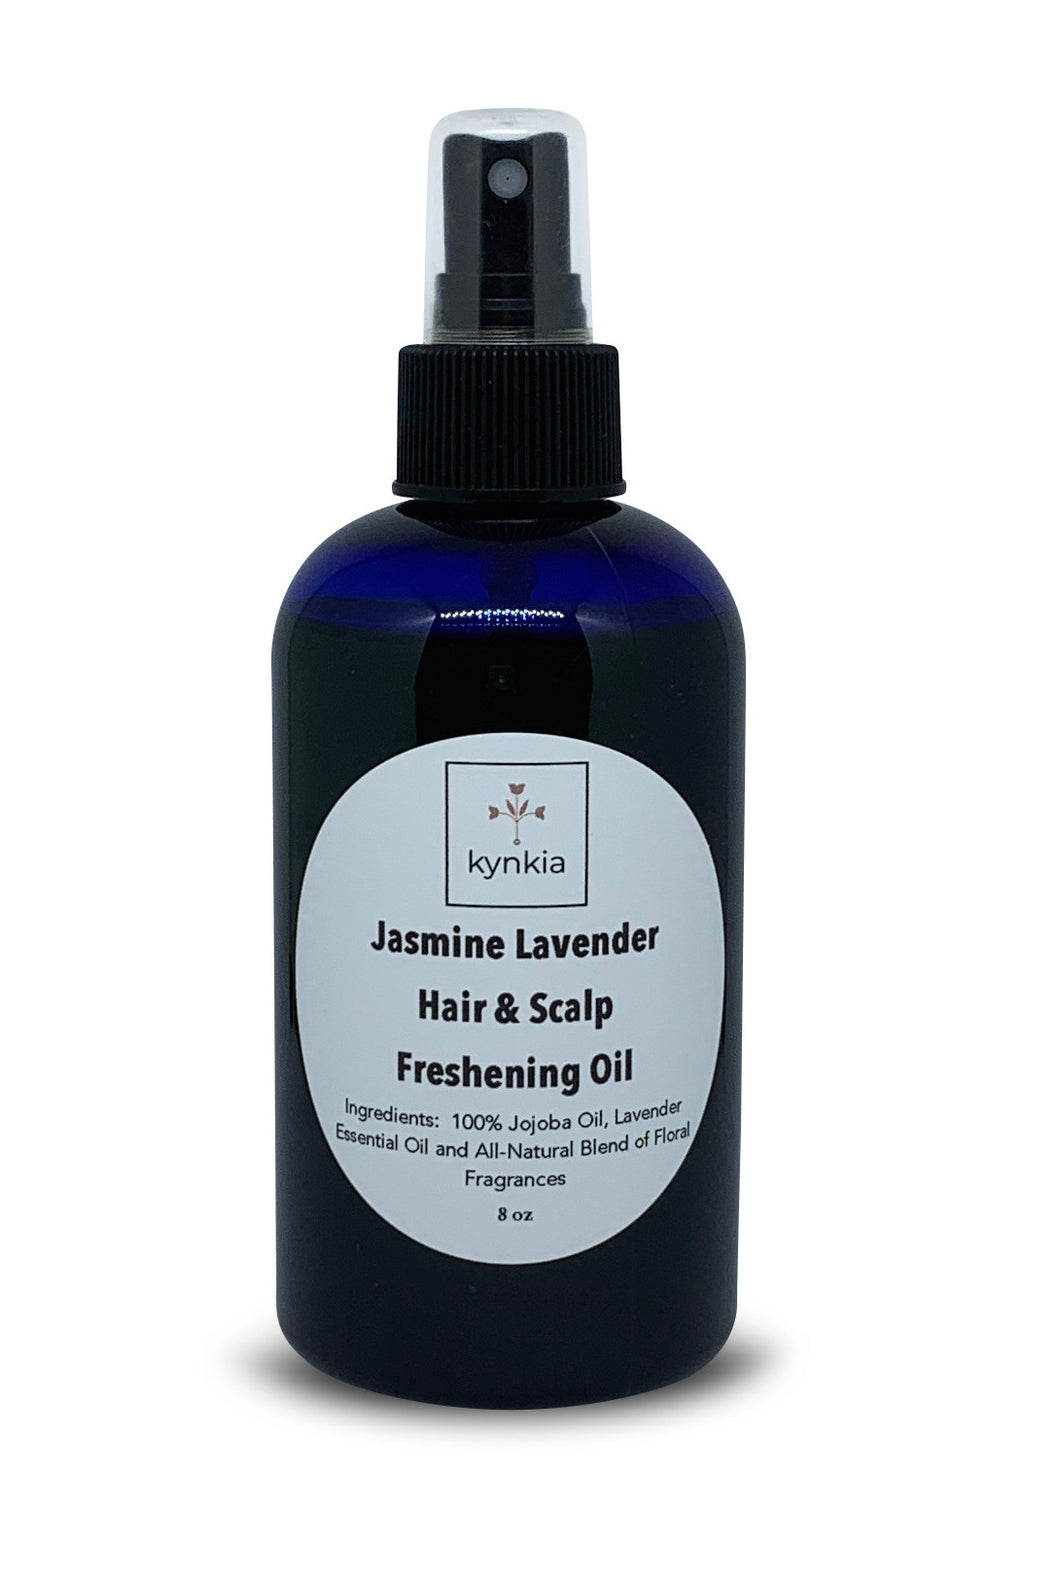 Jasmine Lavender Hair & Scalp Freshening Oil - 4 oz